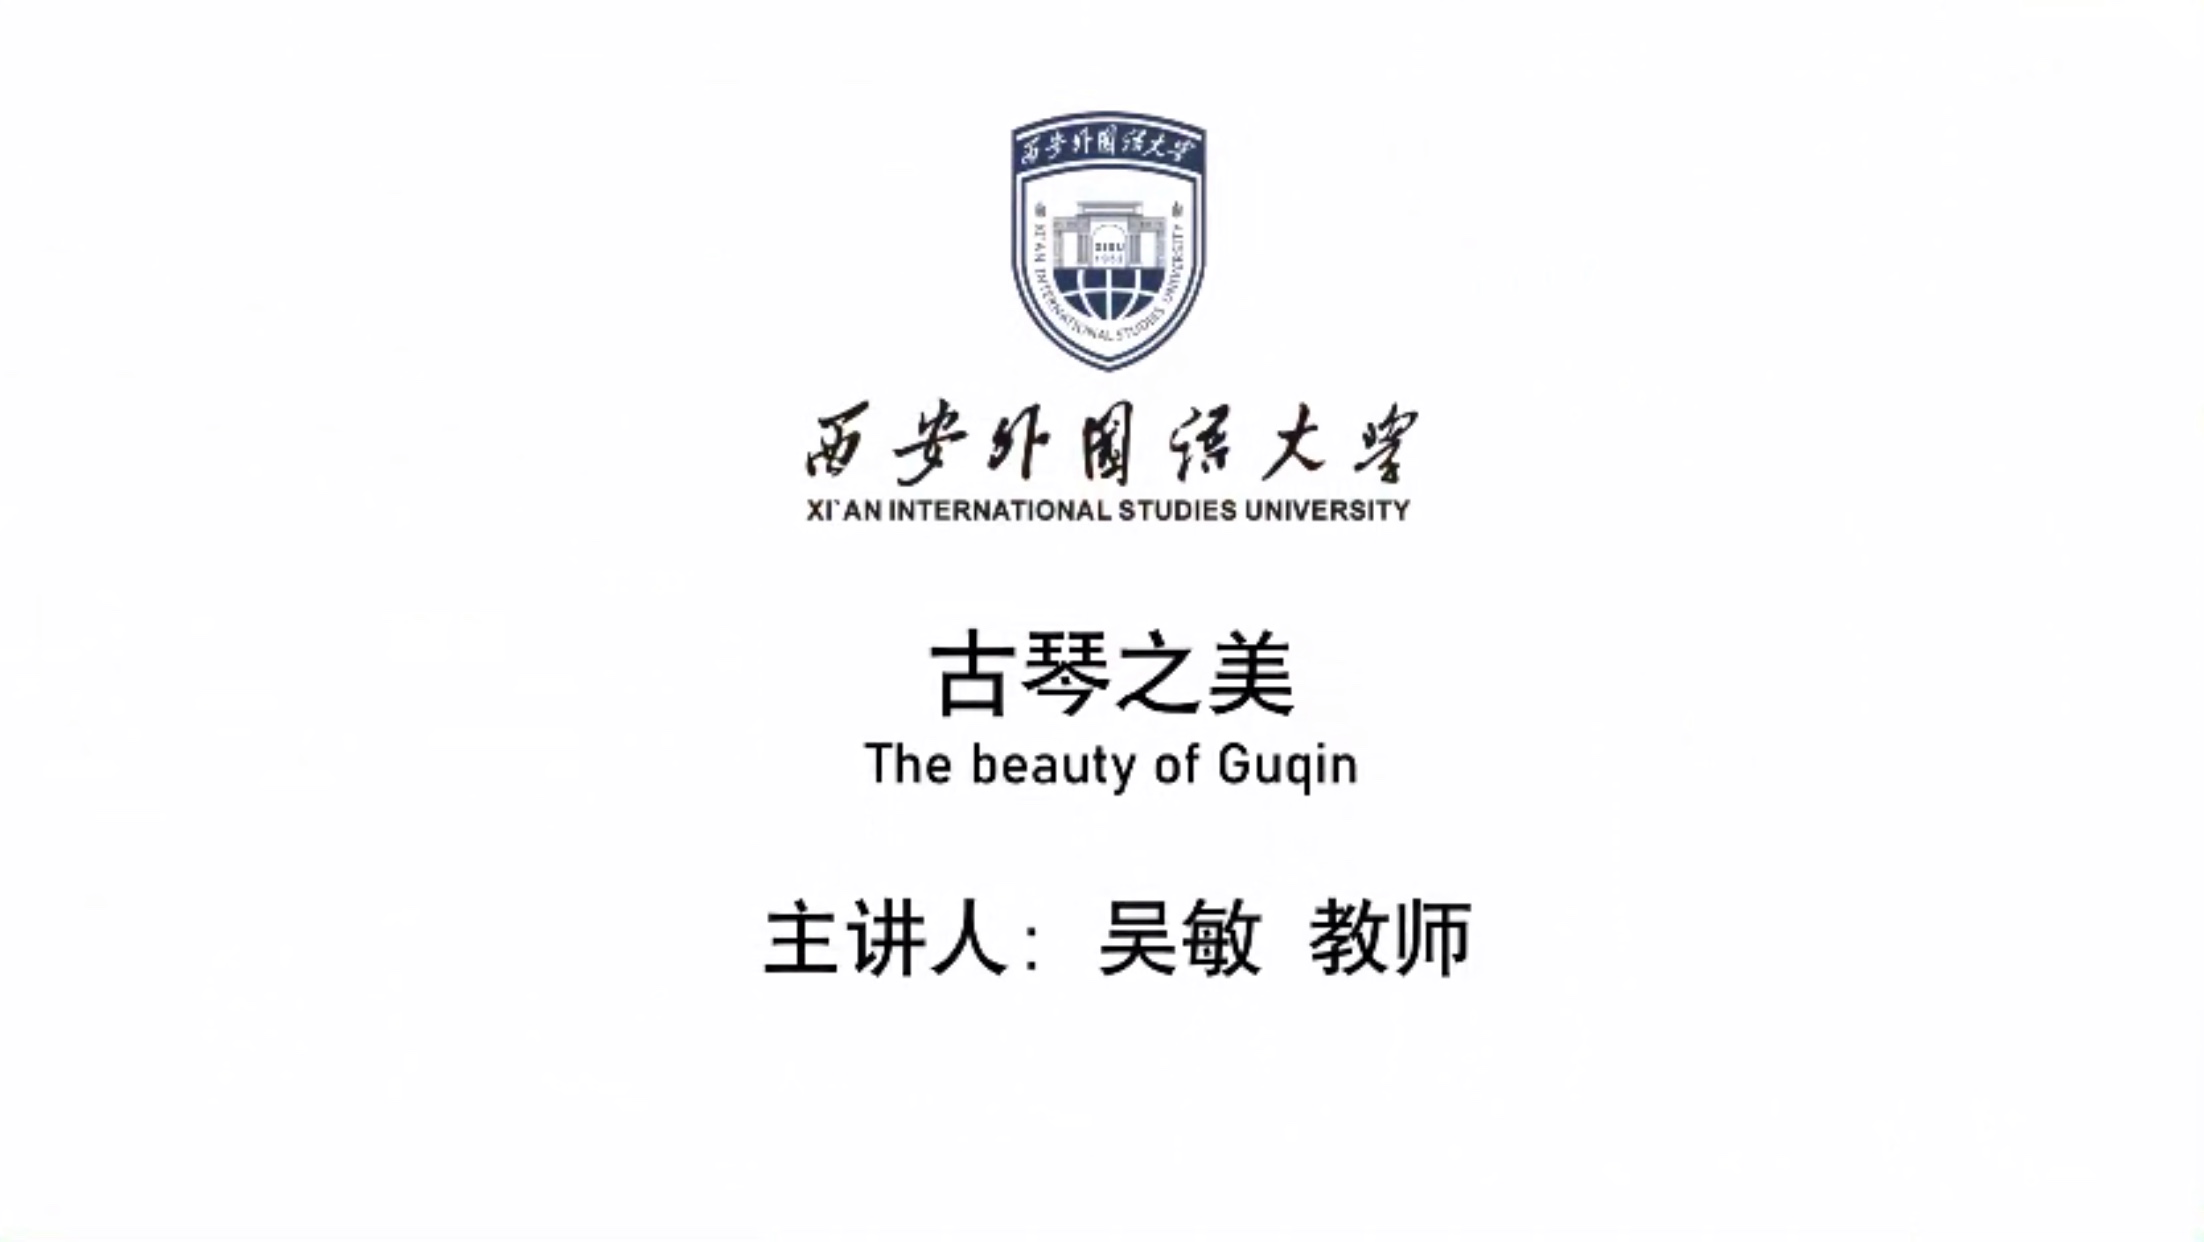 La belleza de Guqin